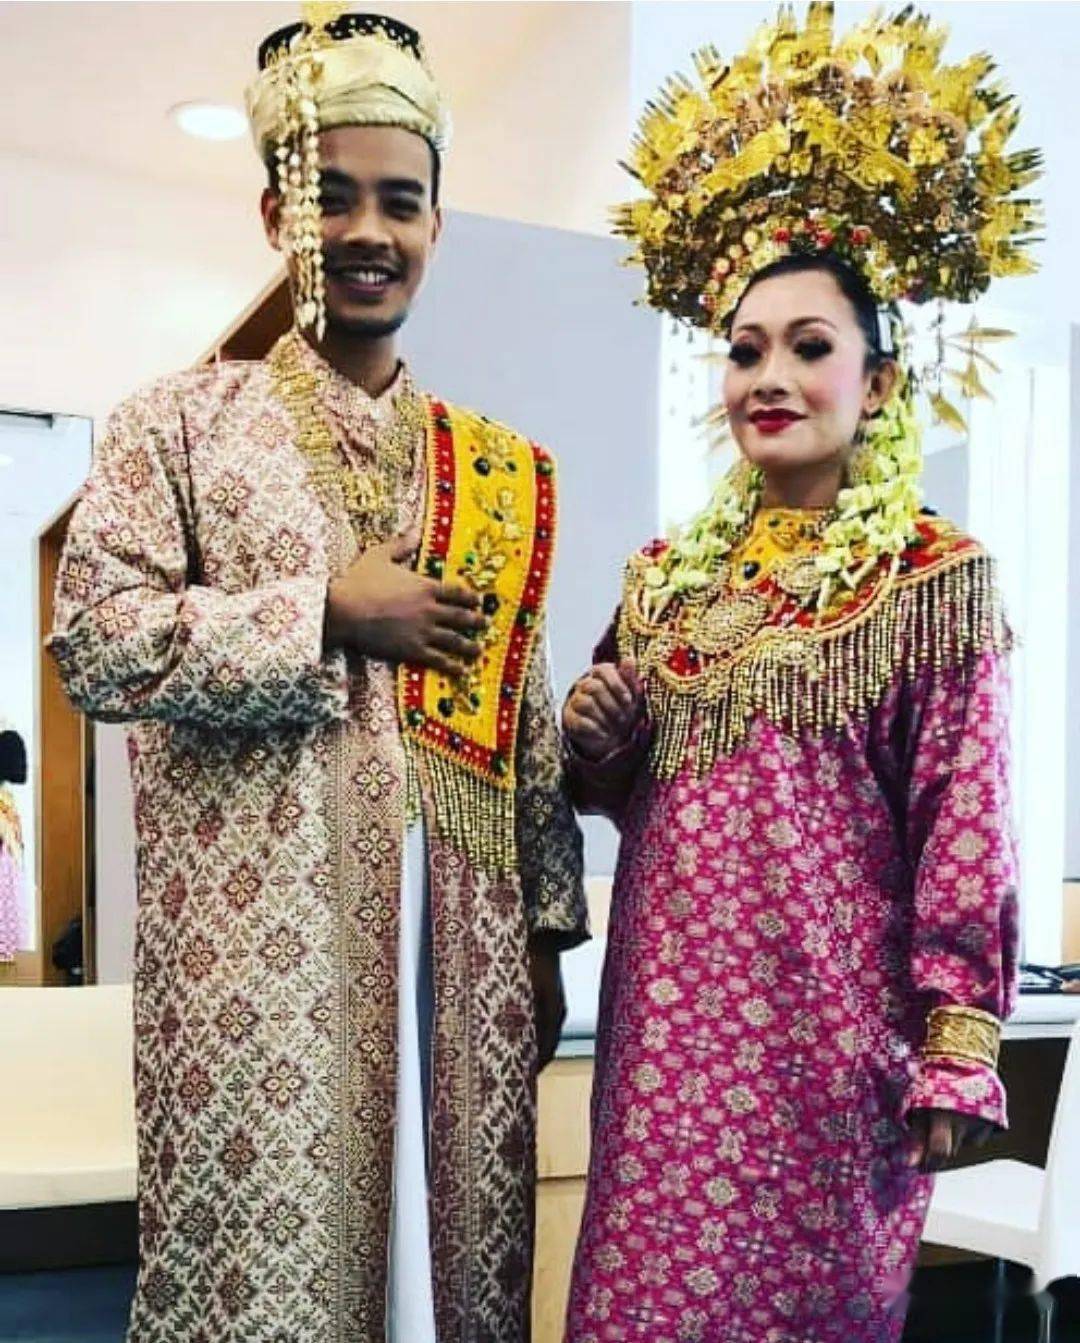 (现今马六甲的一些的马来人会在结婚或者非常重大的场合穿着这种服饰)